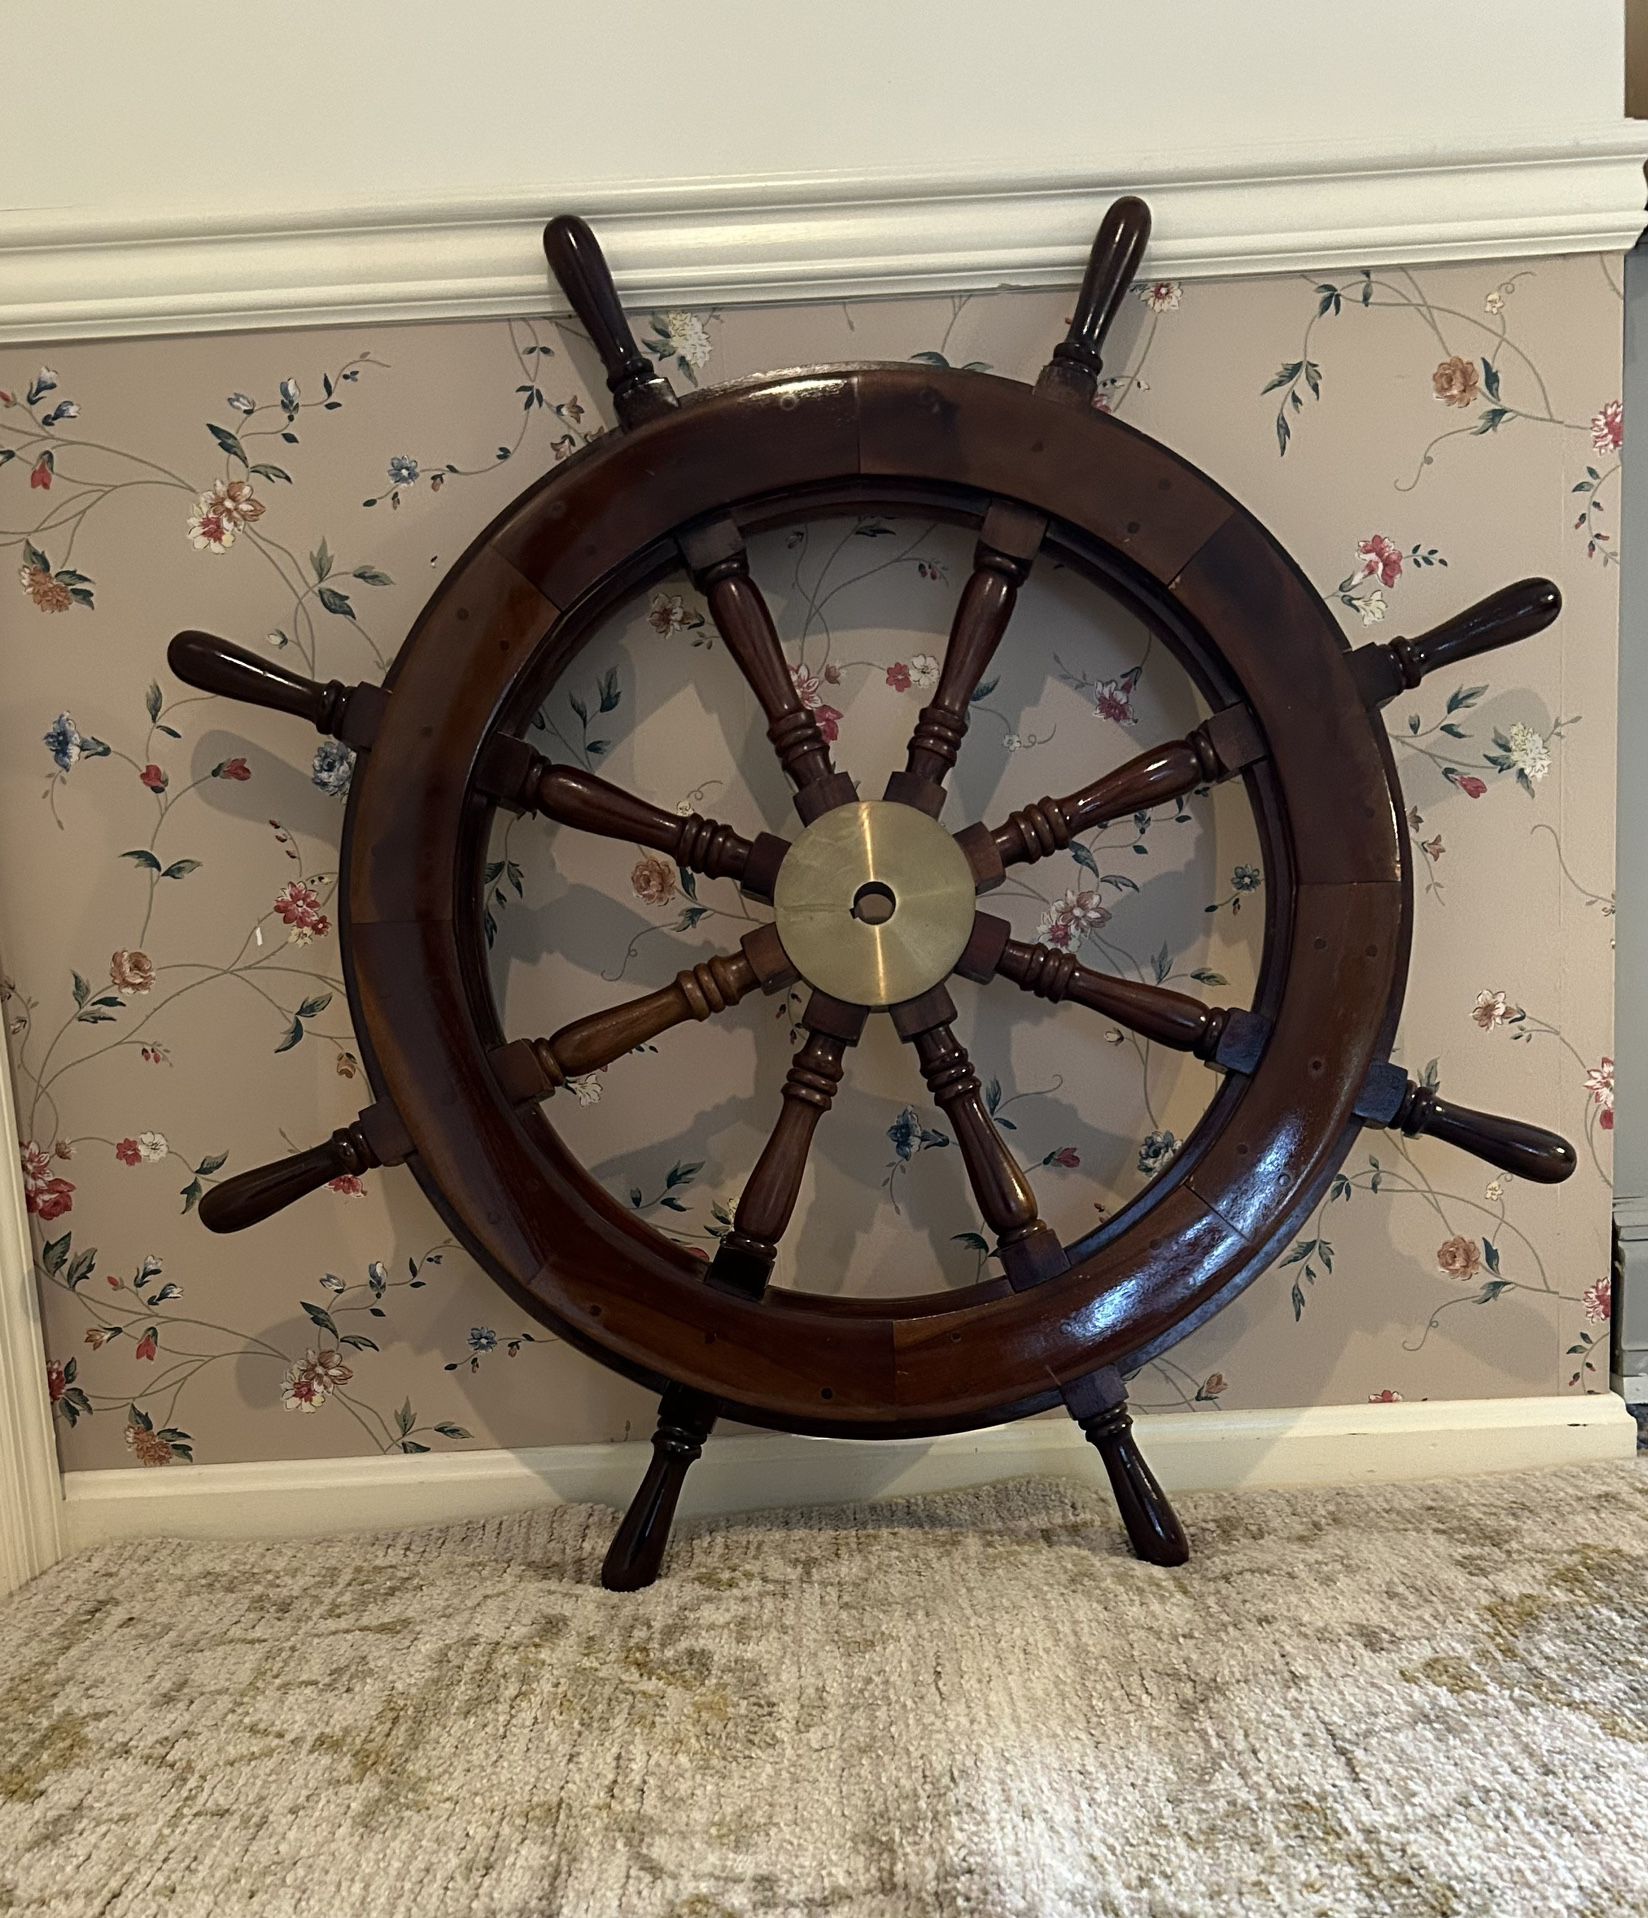 36”Vintage Ship Steering Wheel 